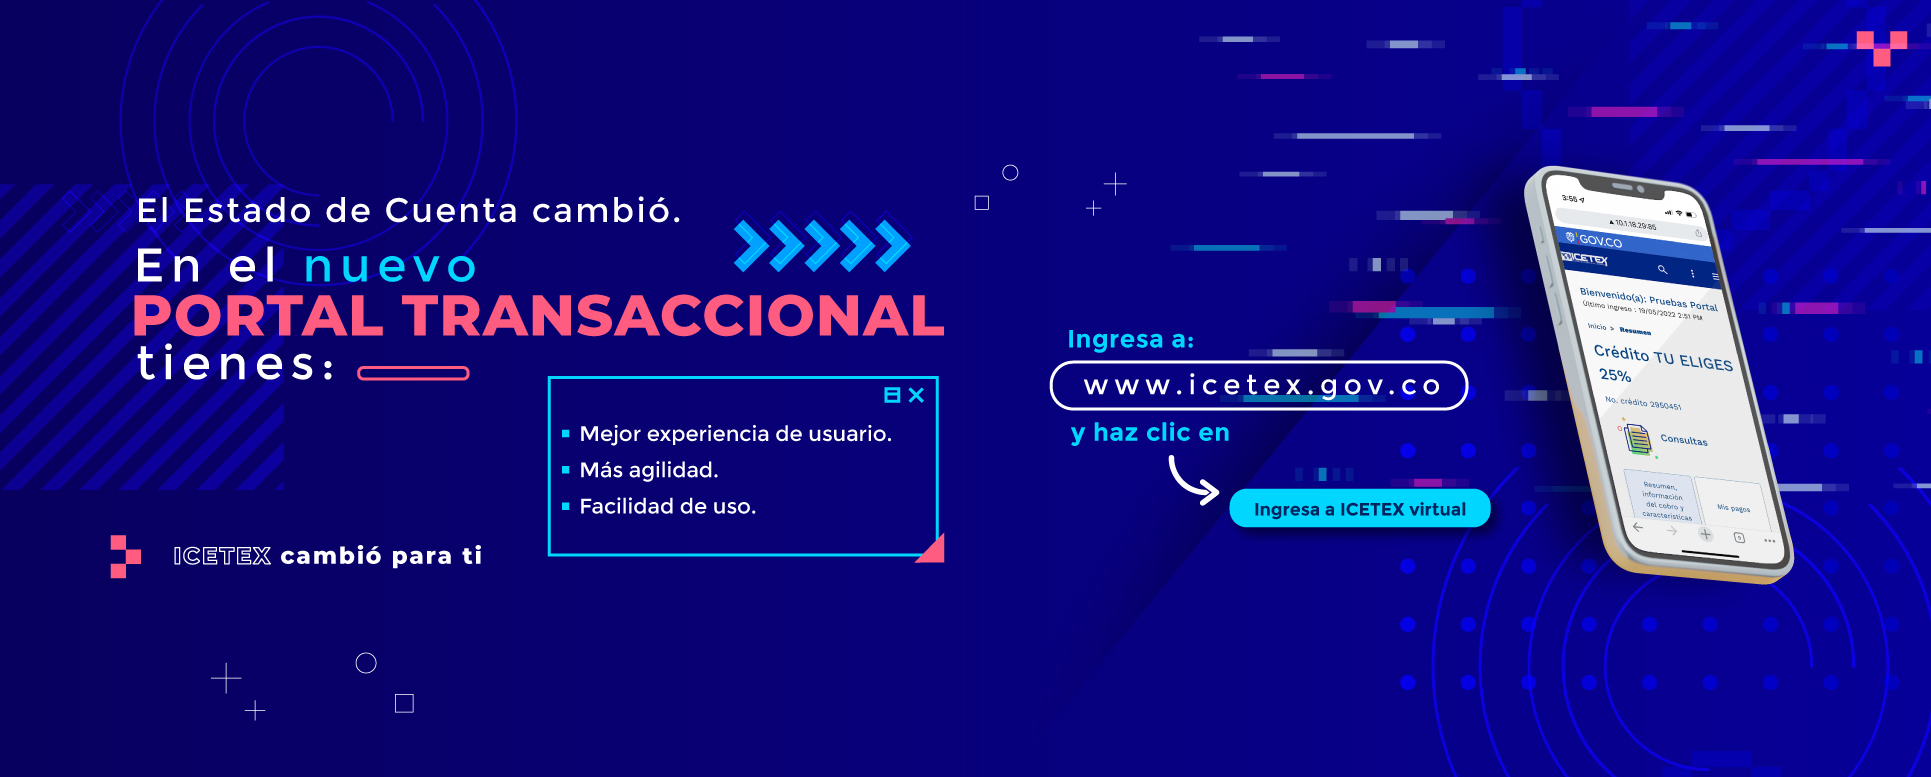 Ya llegó el nuevo Portal Transaccional de ICETEX. Cuéntanos tu experiencia haciendo clic aquí.